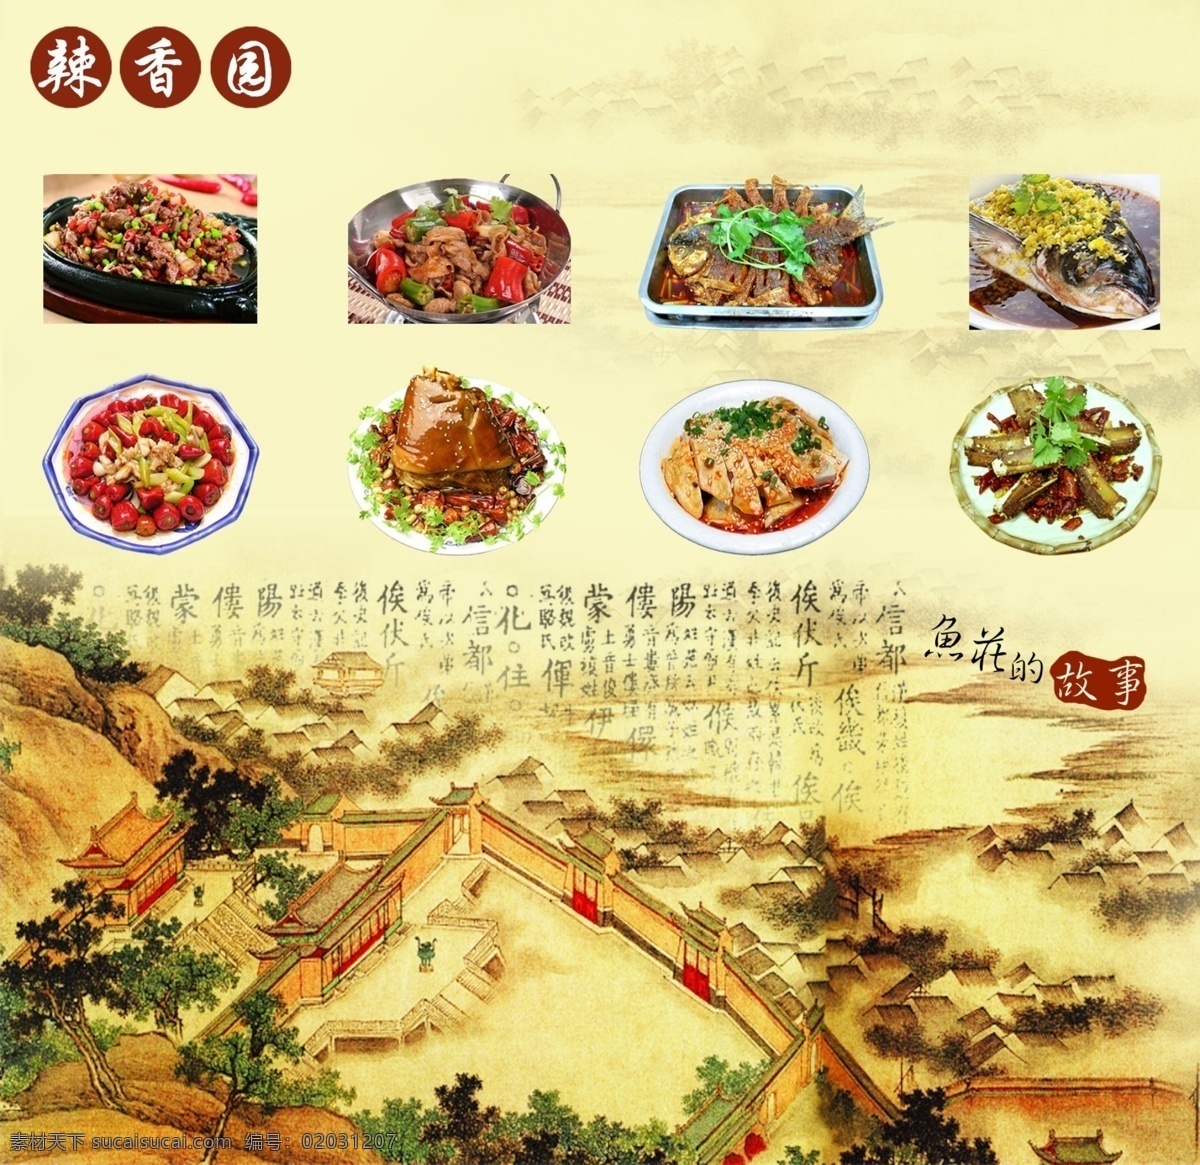 鱼 庄 海报 餐馆 广告设计模板 喷绘 食物 源文件 鱼庄海报 其他海报设计